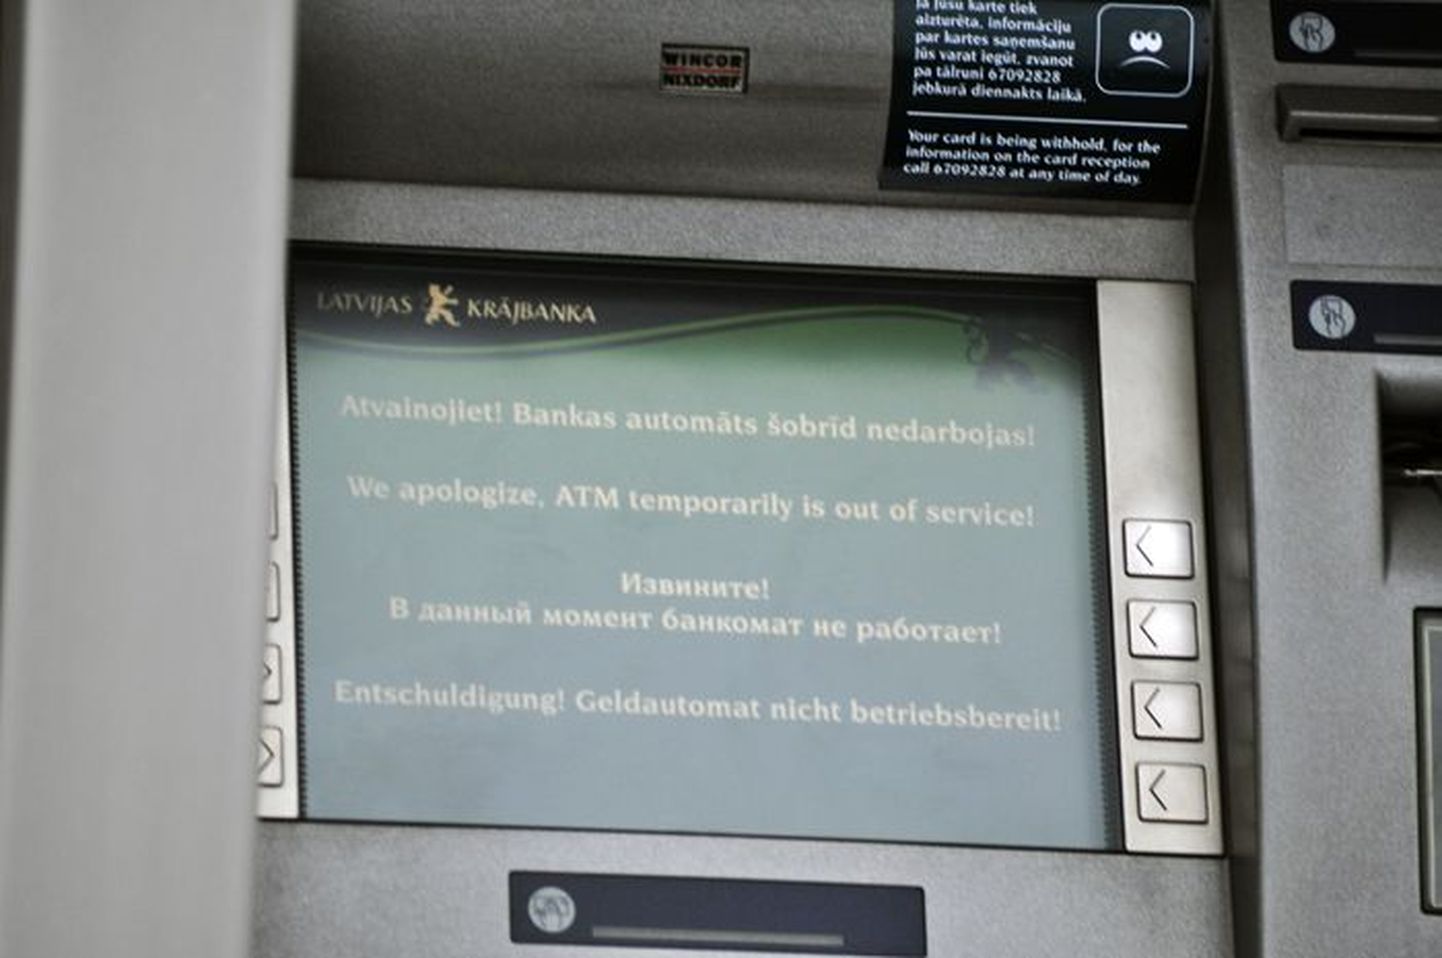 Latvijas Krajbanka sularahaautomaat.